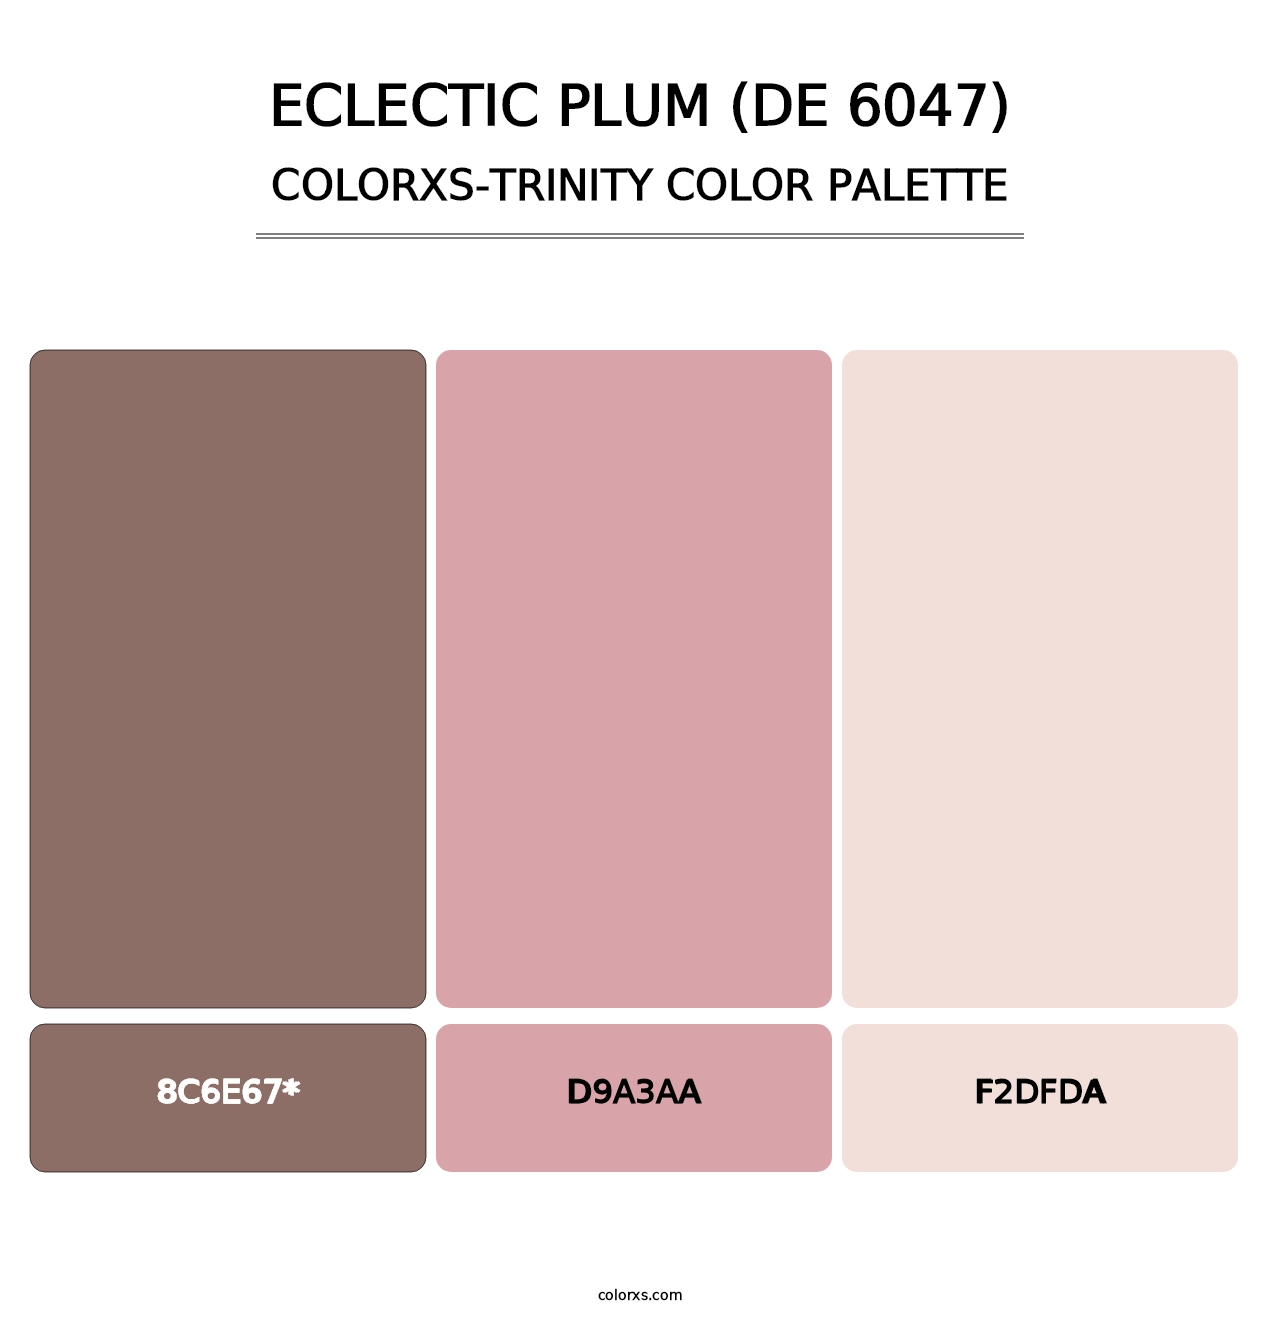 Eclectic Plum (DE 6047) - Colorxs Trinity Palette